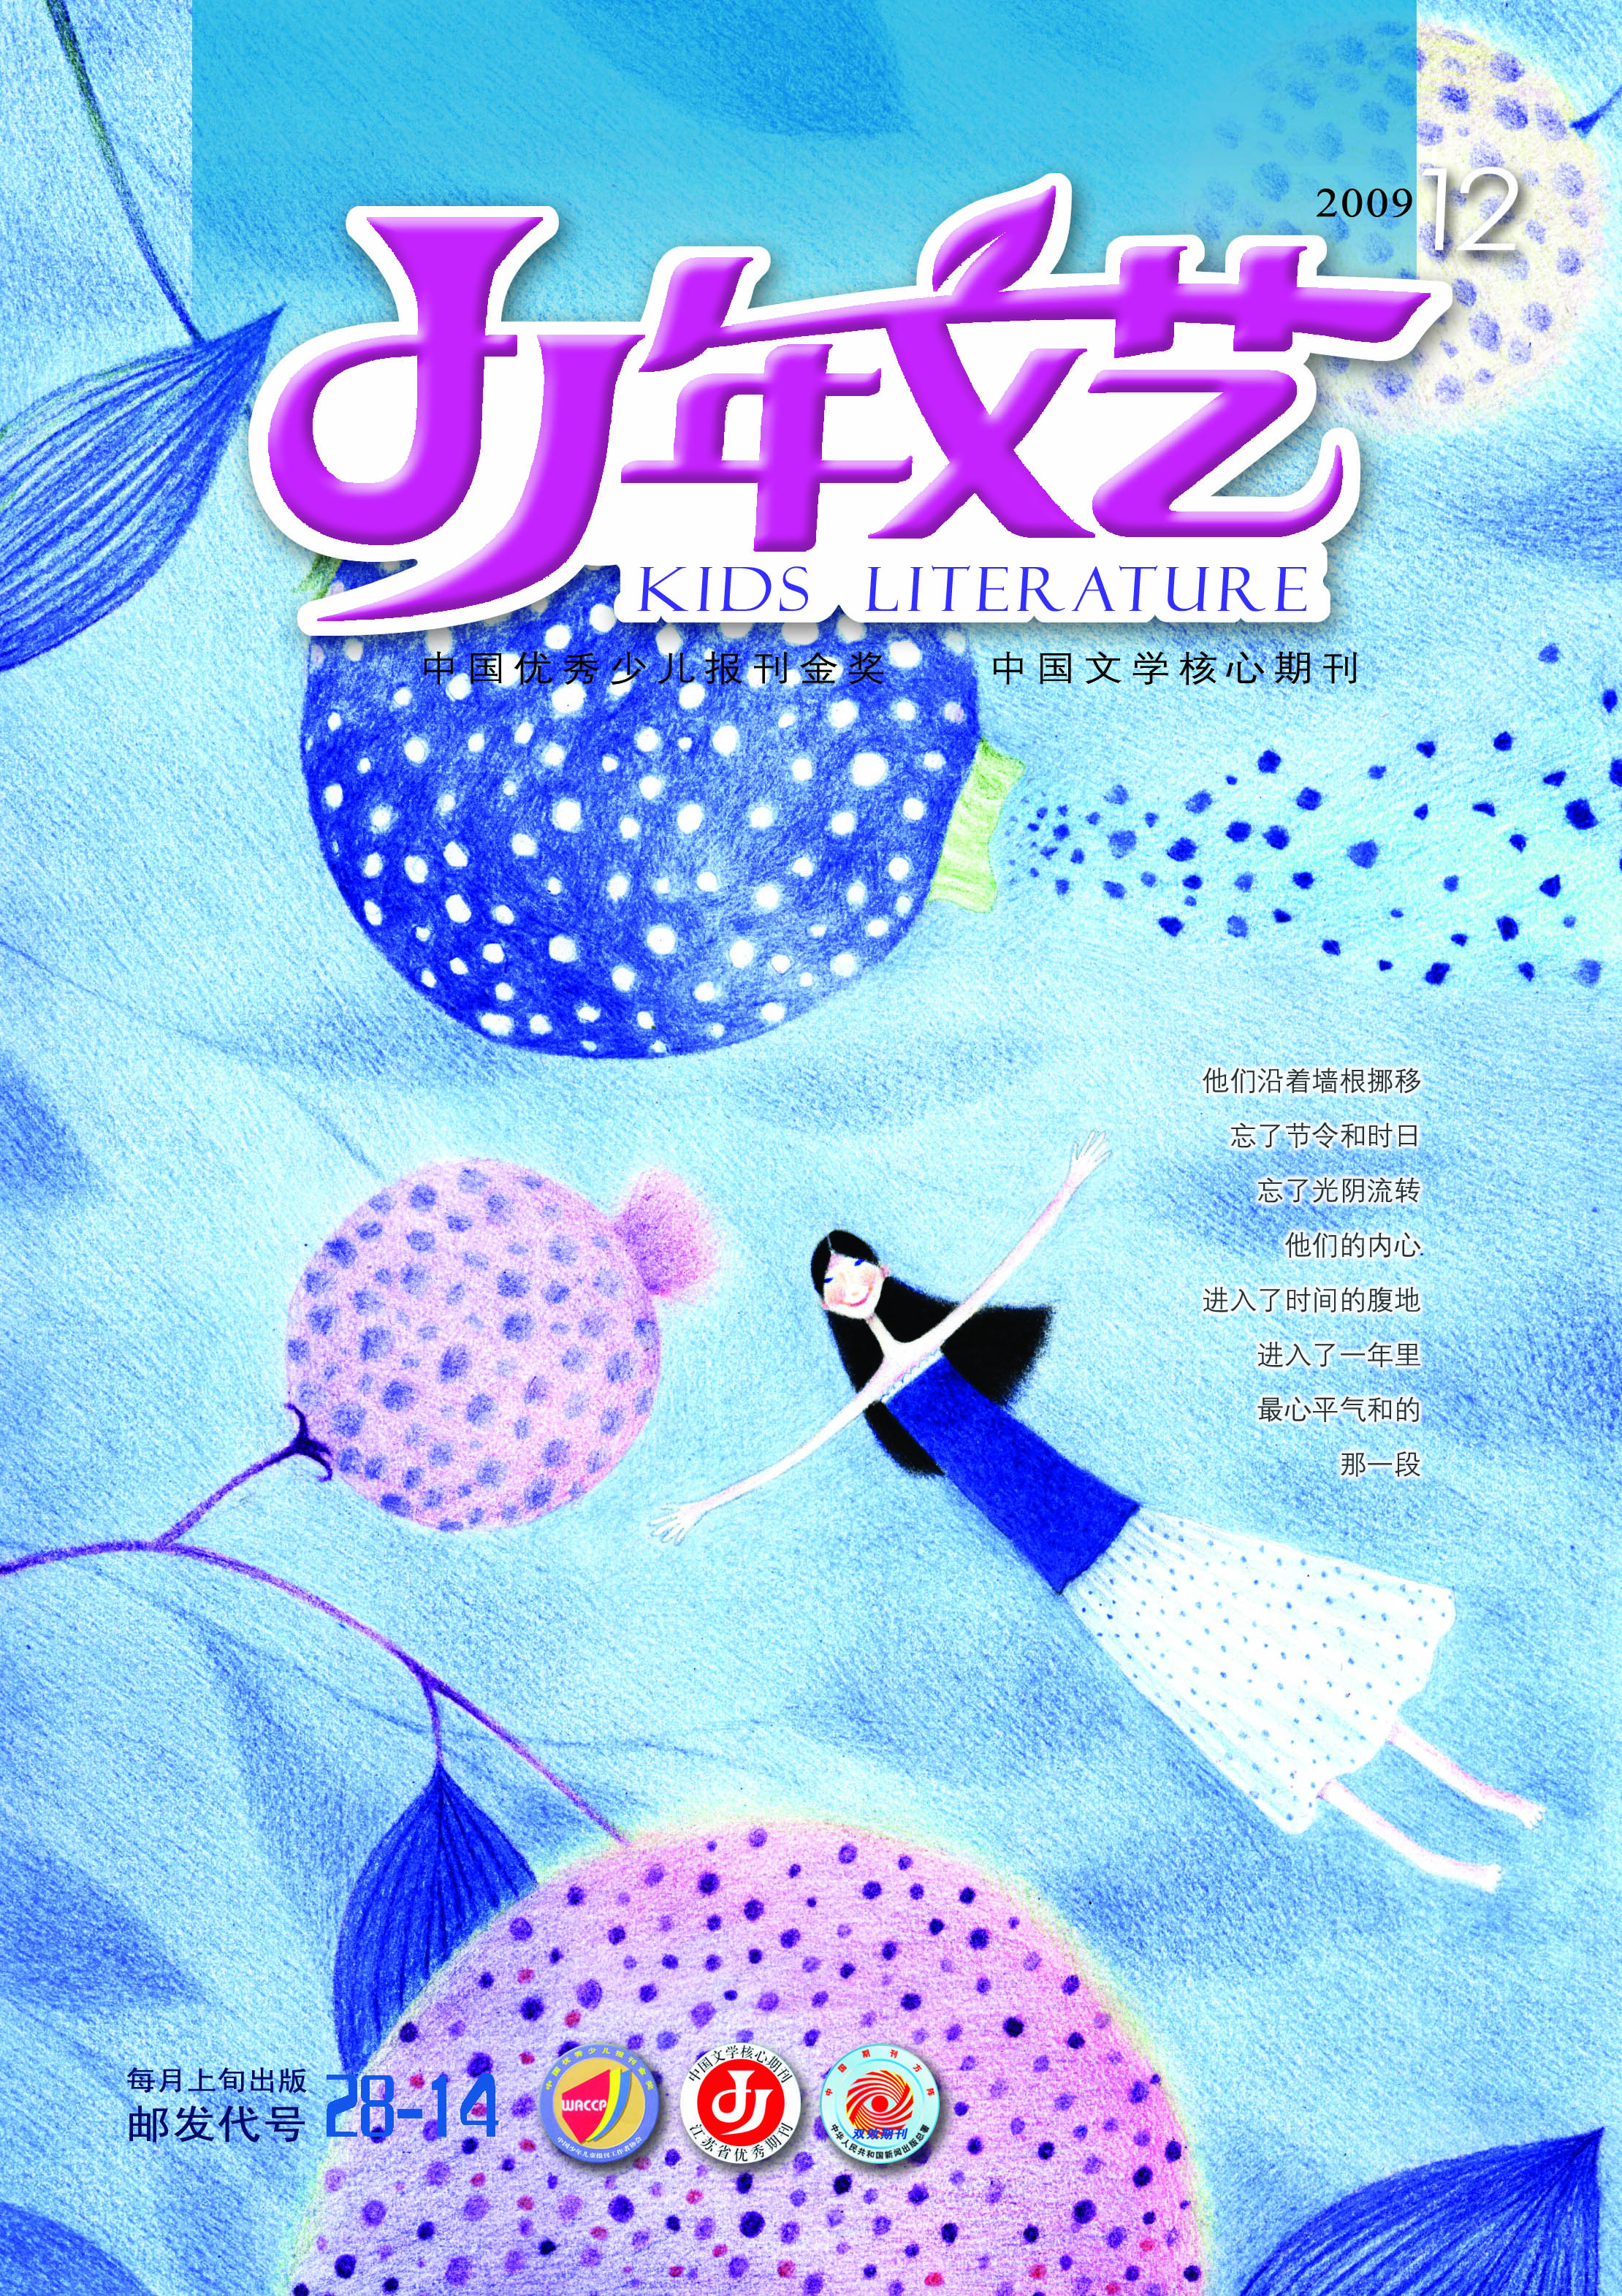 2009年12月號封面